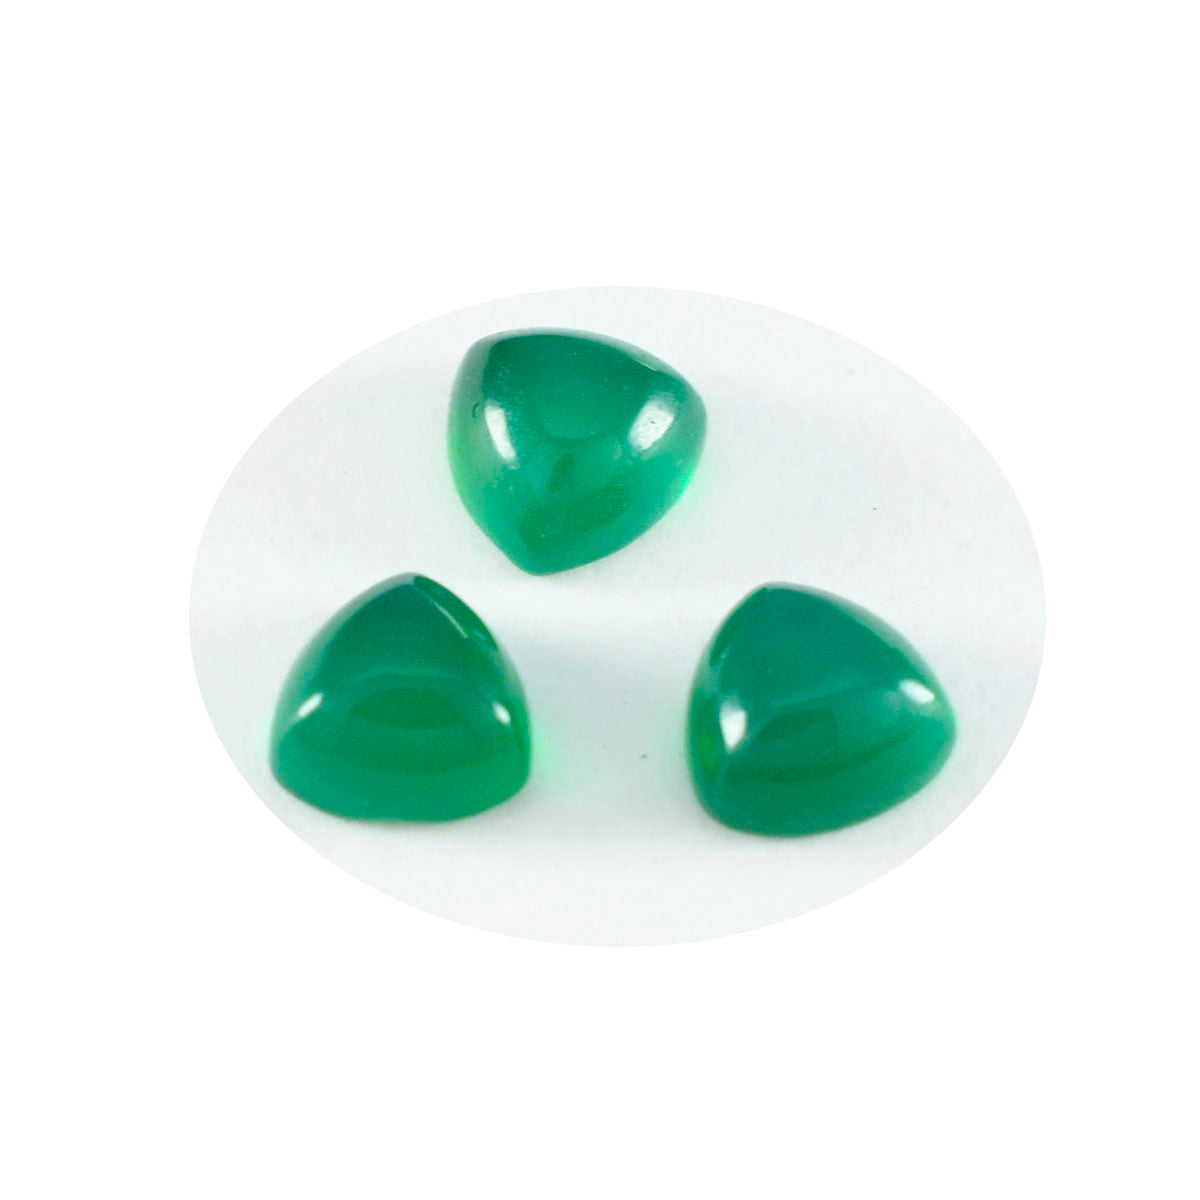 riyogems 1 шт. зеленый оникс кабошон 11x11 мм форма триллион сладкий качественный свободный камень